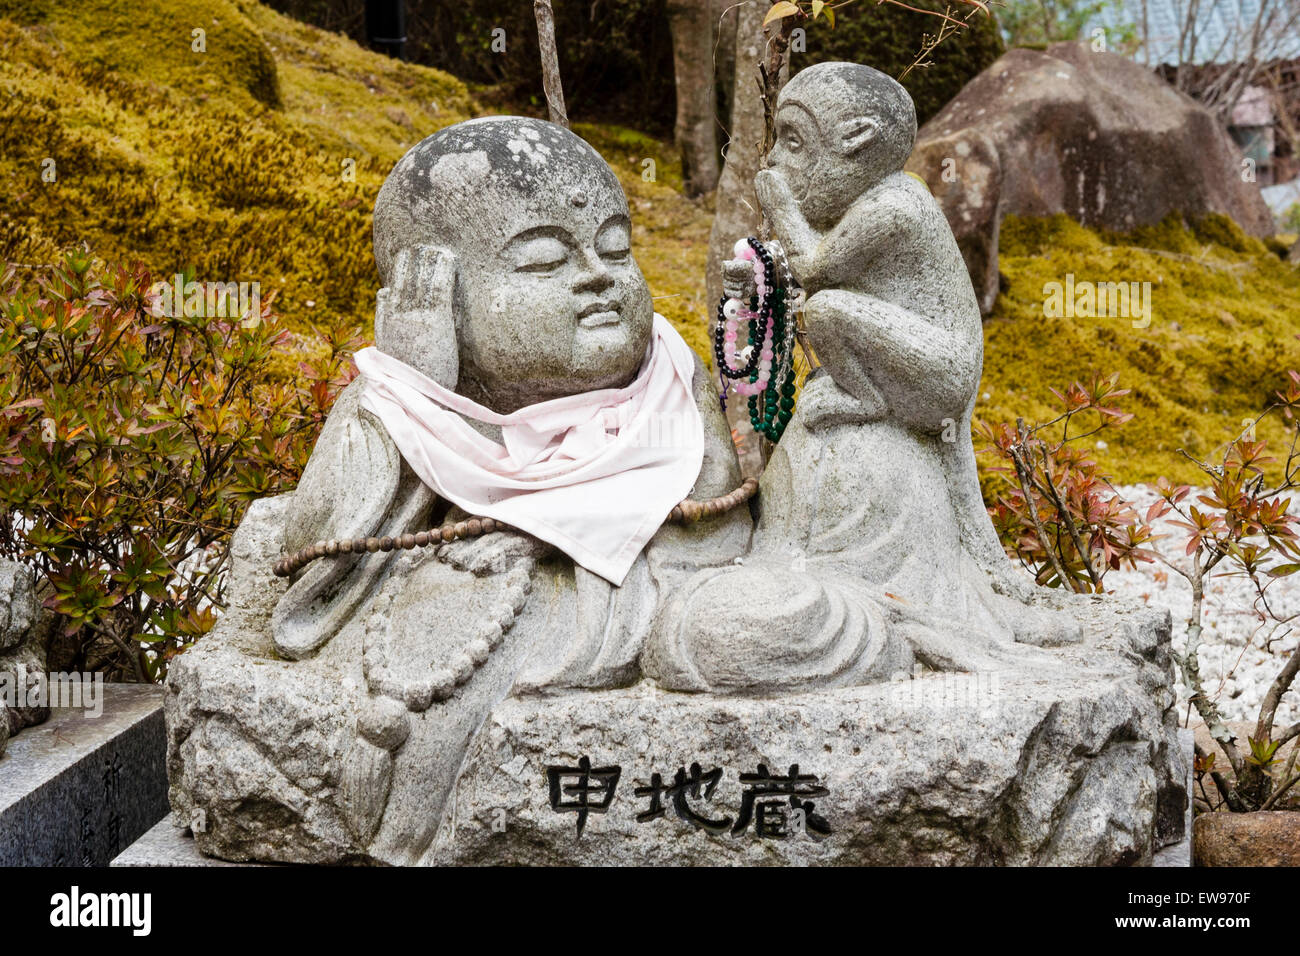 Giappone, Miyajima. Tempio Daisho-in. Piccola statua di Jizo di un monaco buddista reclinato con bib rosso e una scimmia sussurrante seduto accanto a lui mangiare. Foto Stock